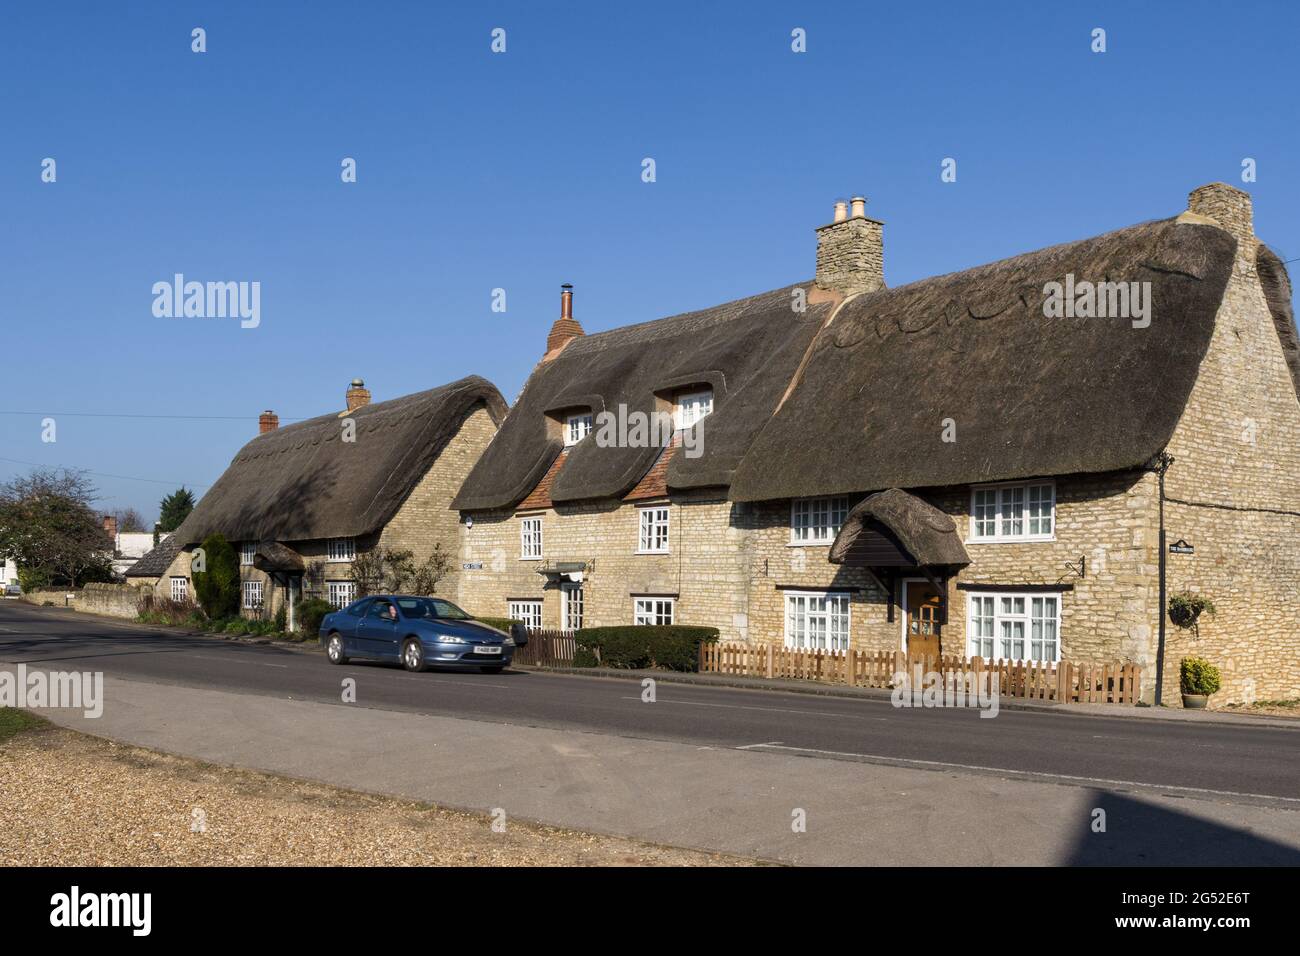 Scena di strada in primavera nel villaggio di Stoke Goldington, Buckinghamshire, Regno Unito; auto che passa una fila di case di paglia. Foto Stock